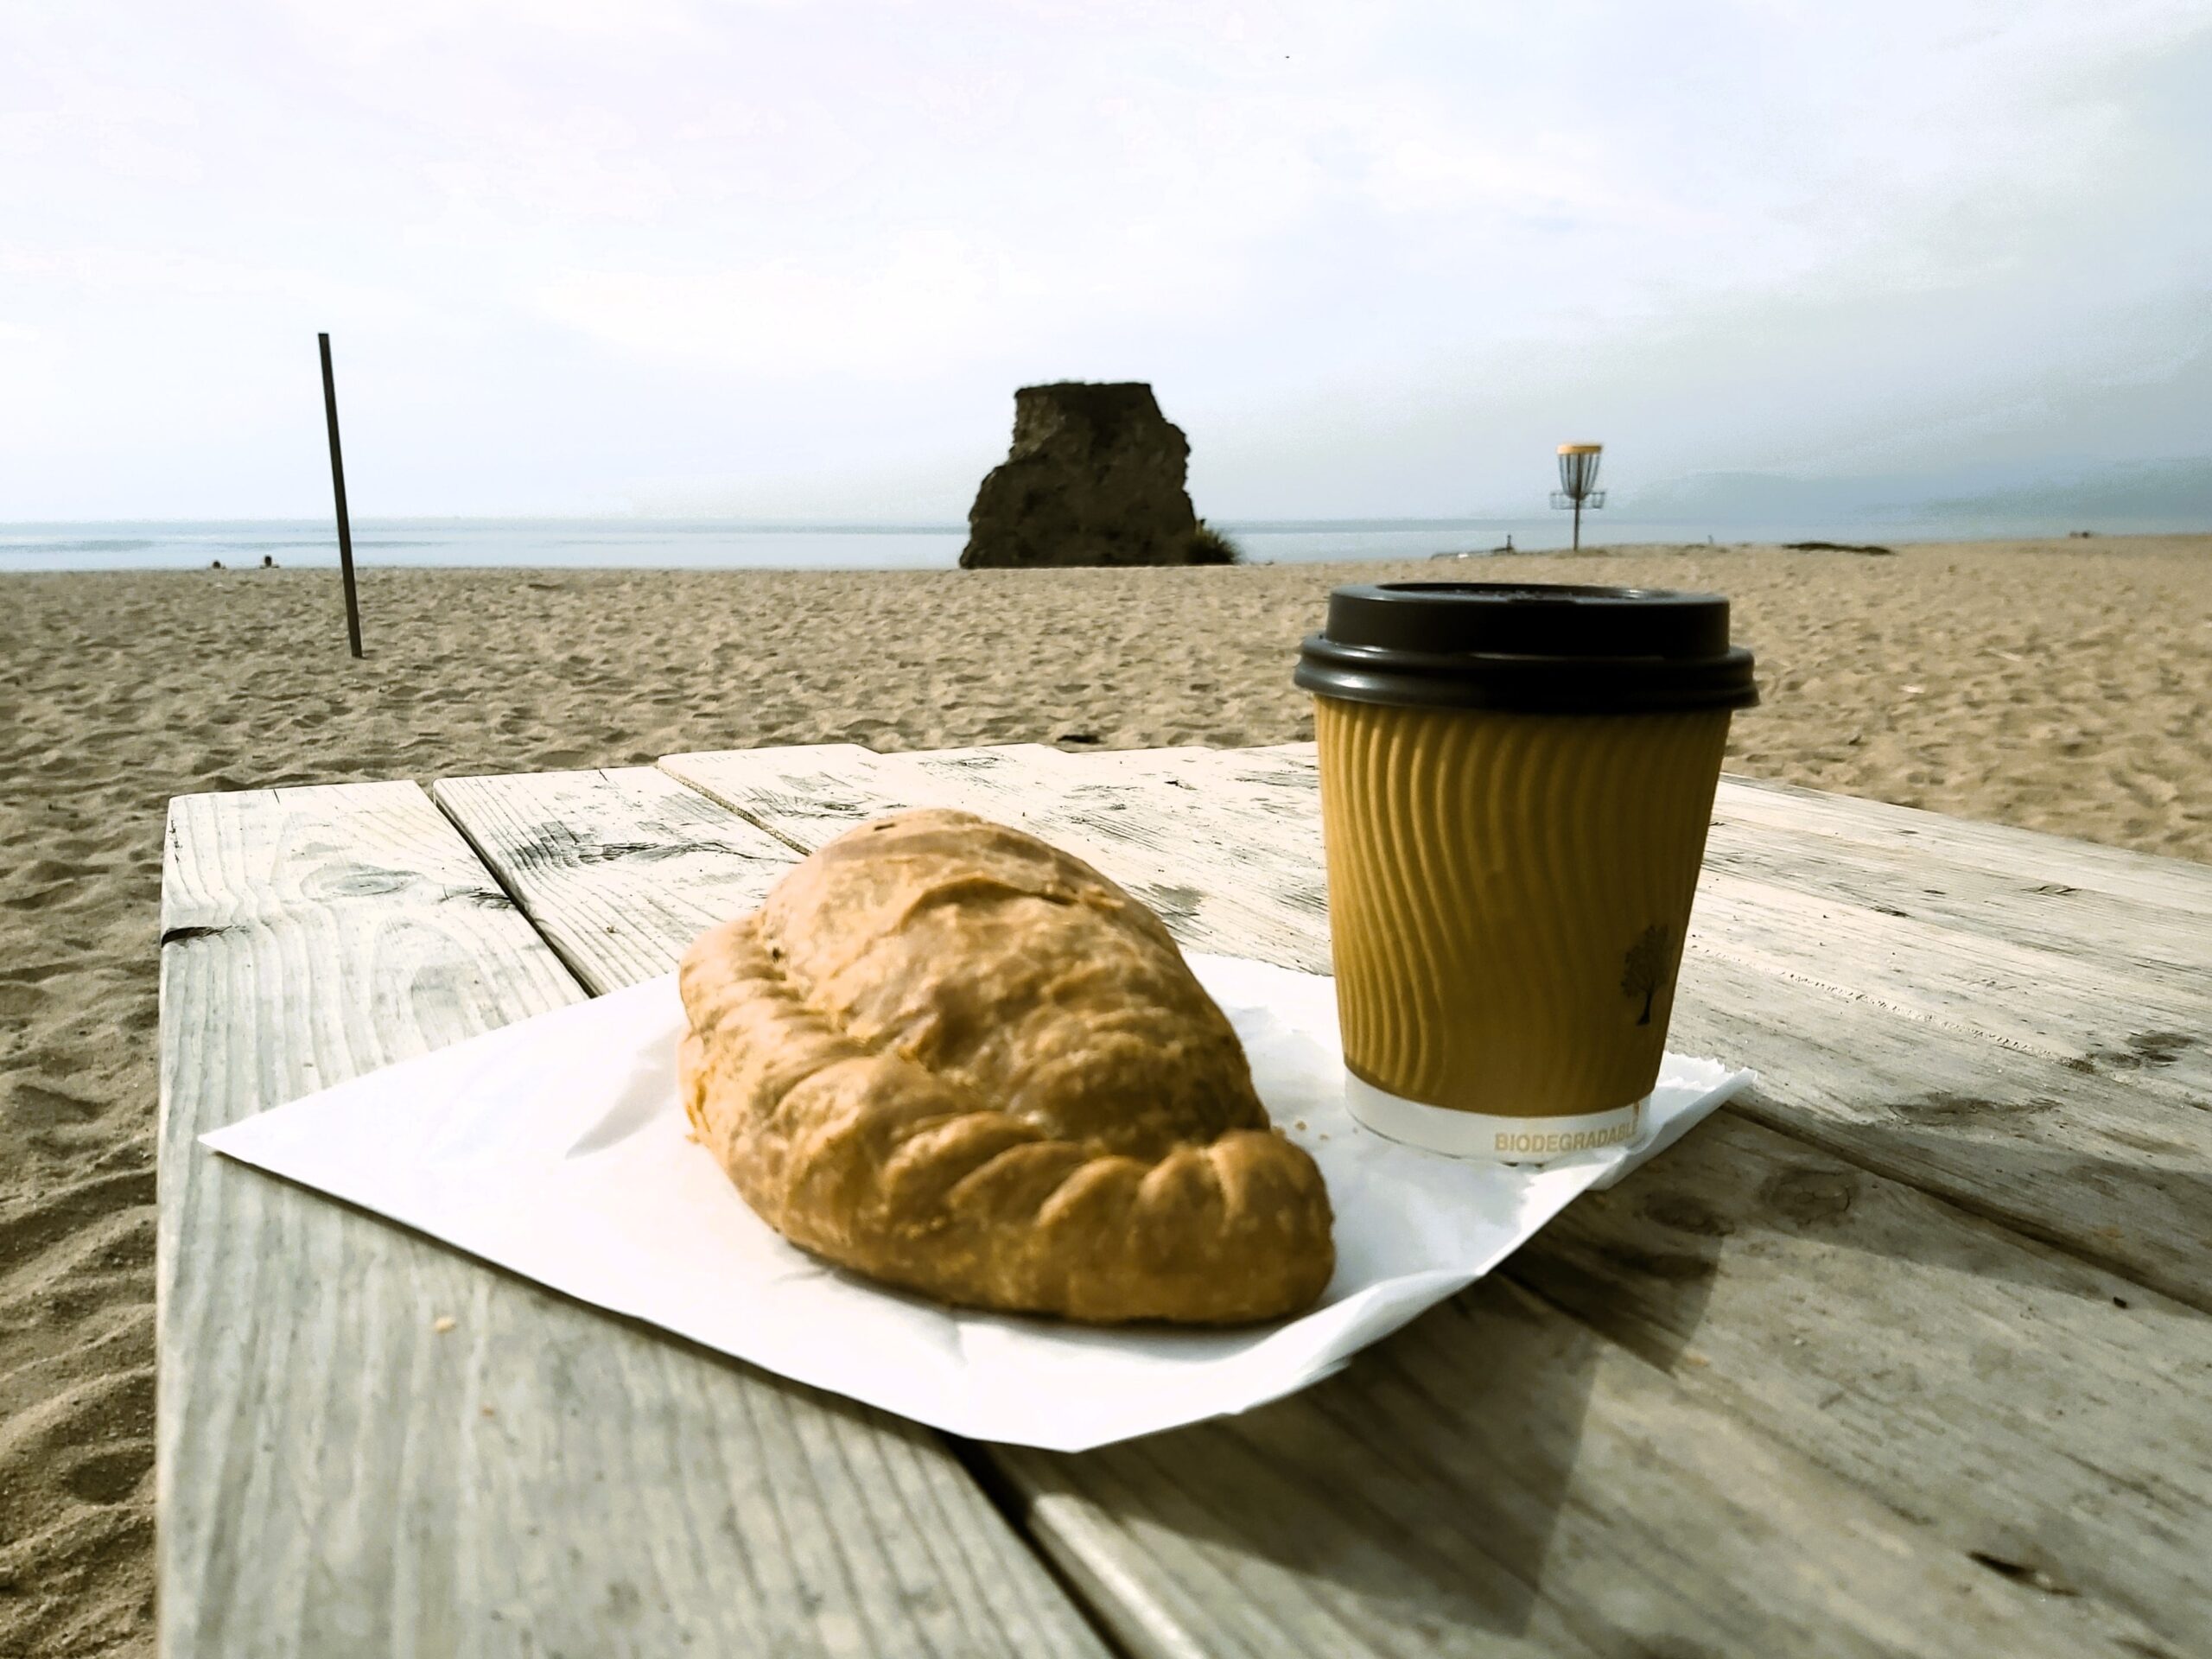 Cornish pasty and coffee at Carlyon bay, Cornwall, England